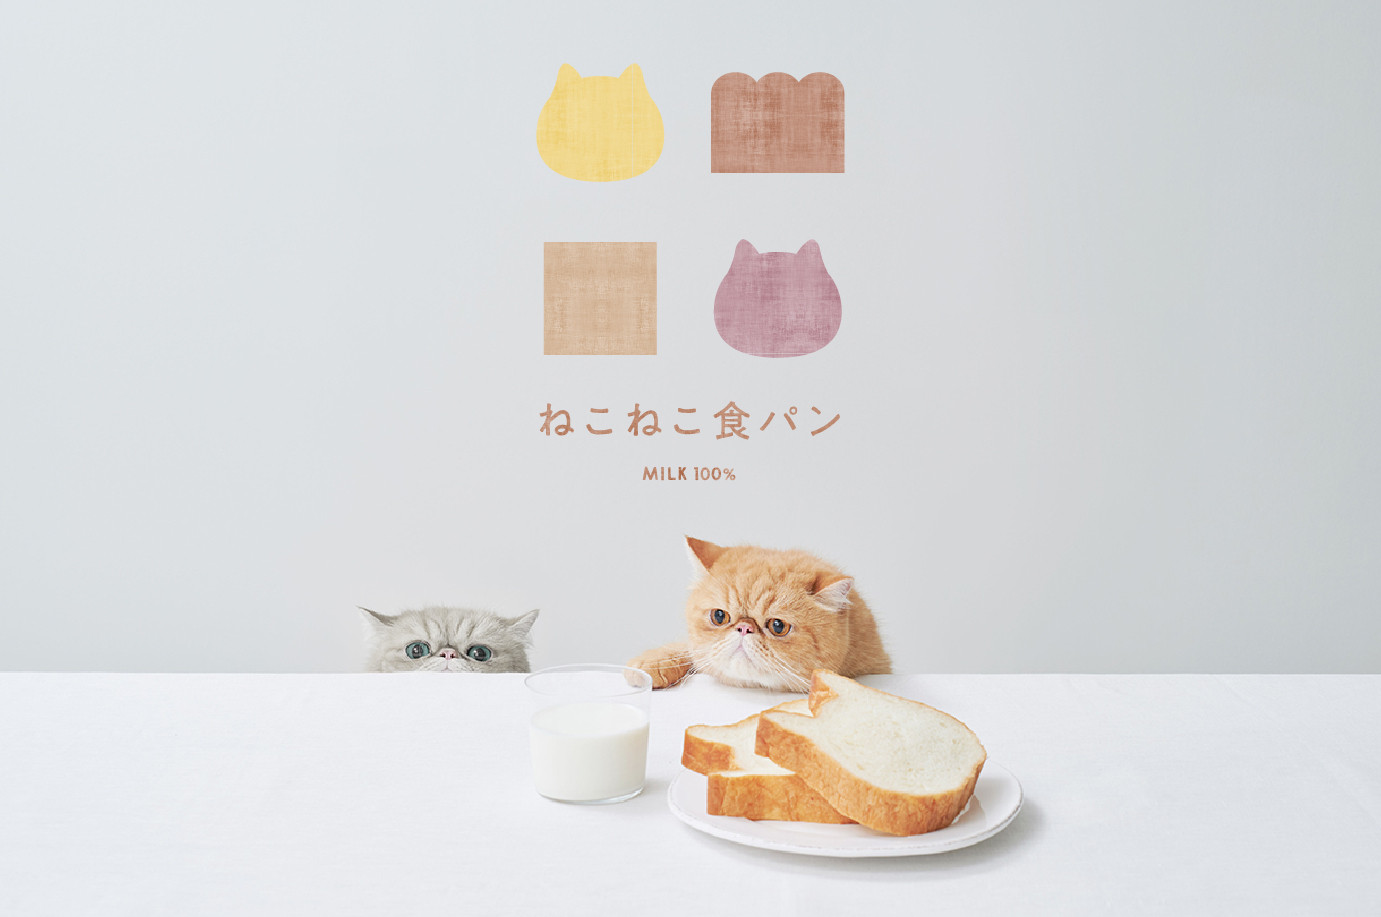 ねこの形の高級食パン専門店「ねこねこ食パン」が神奈川・伊勢原に登場!